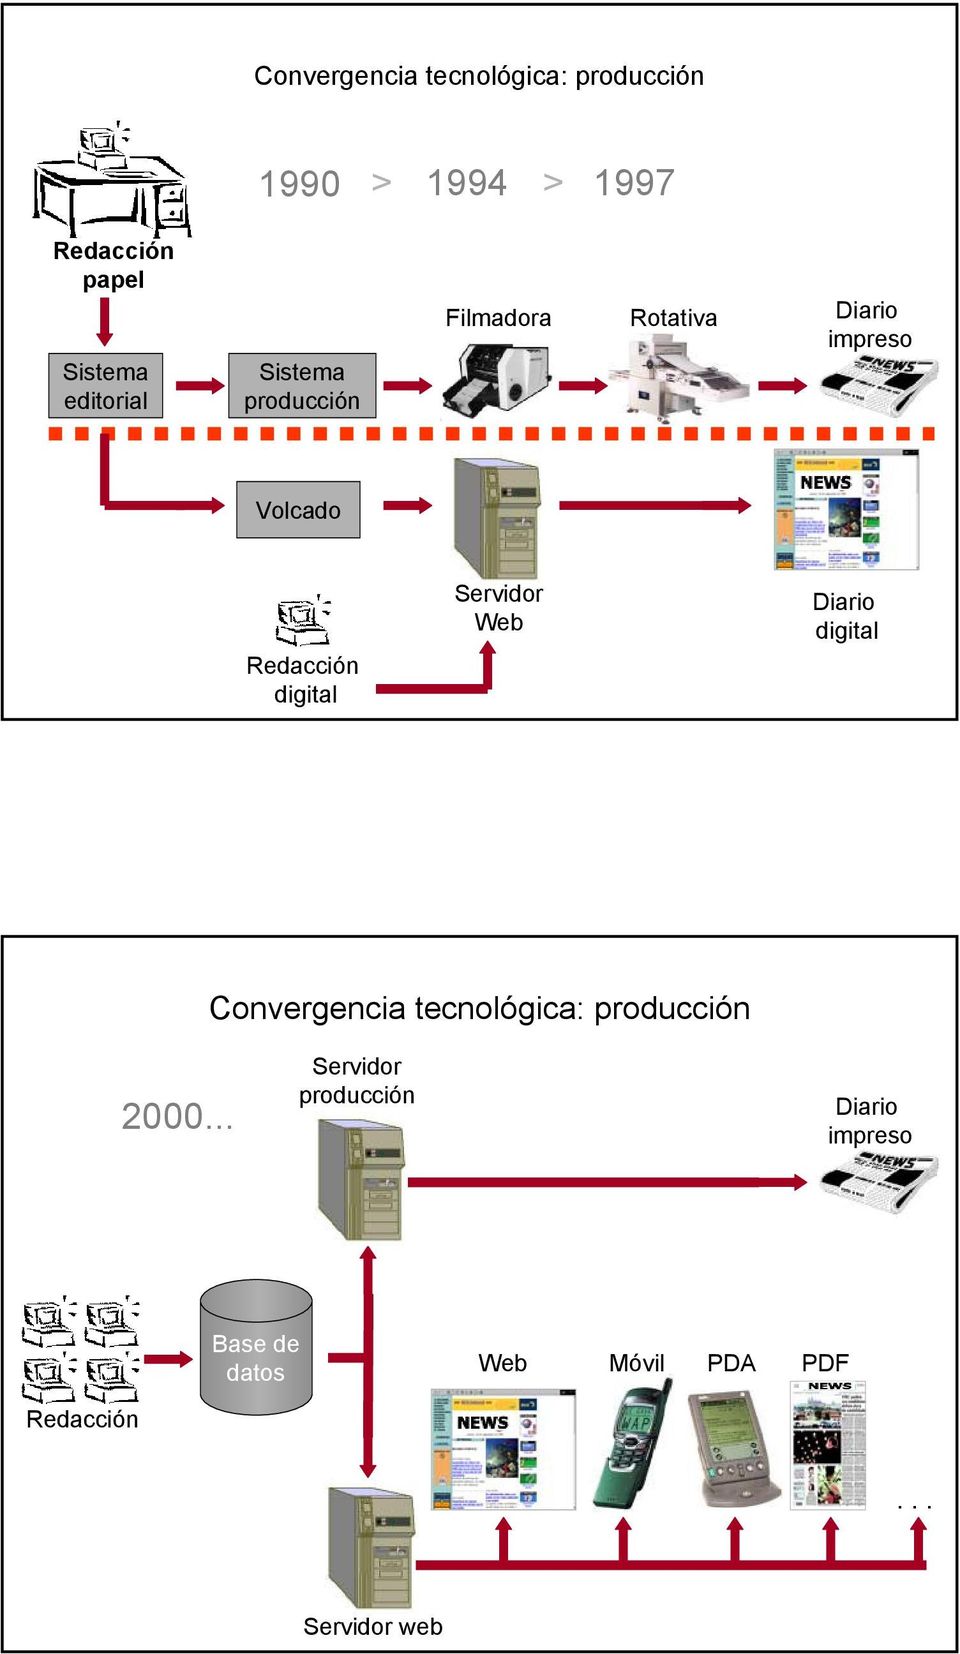 digital Servidor Web Diario digital Convergencia tecnológica: producción 2000.